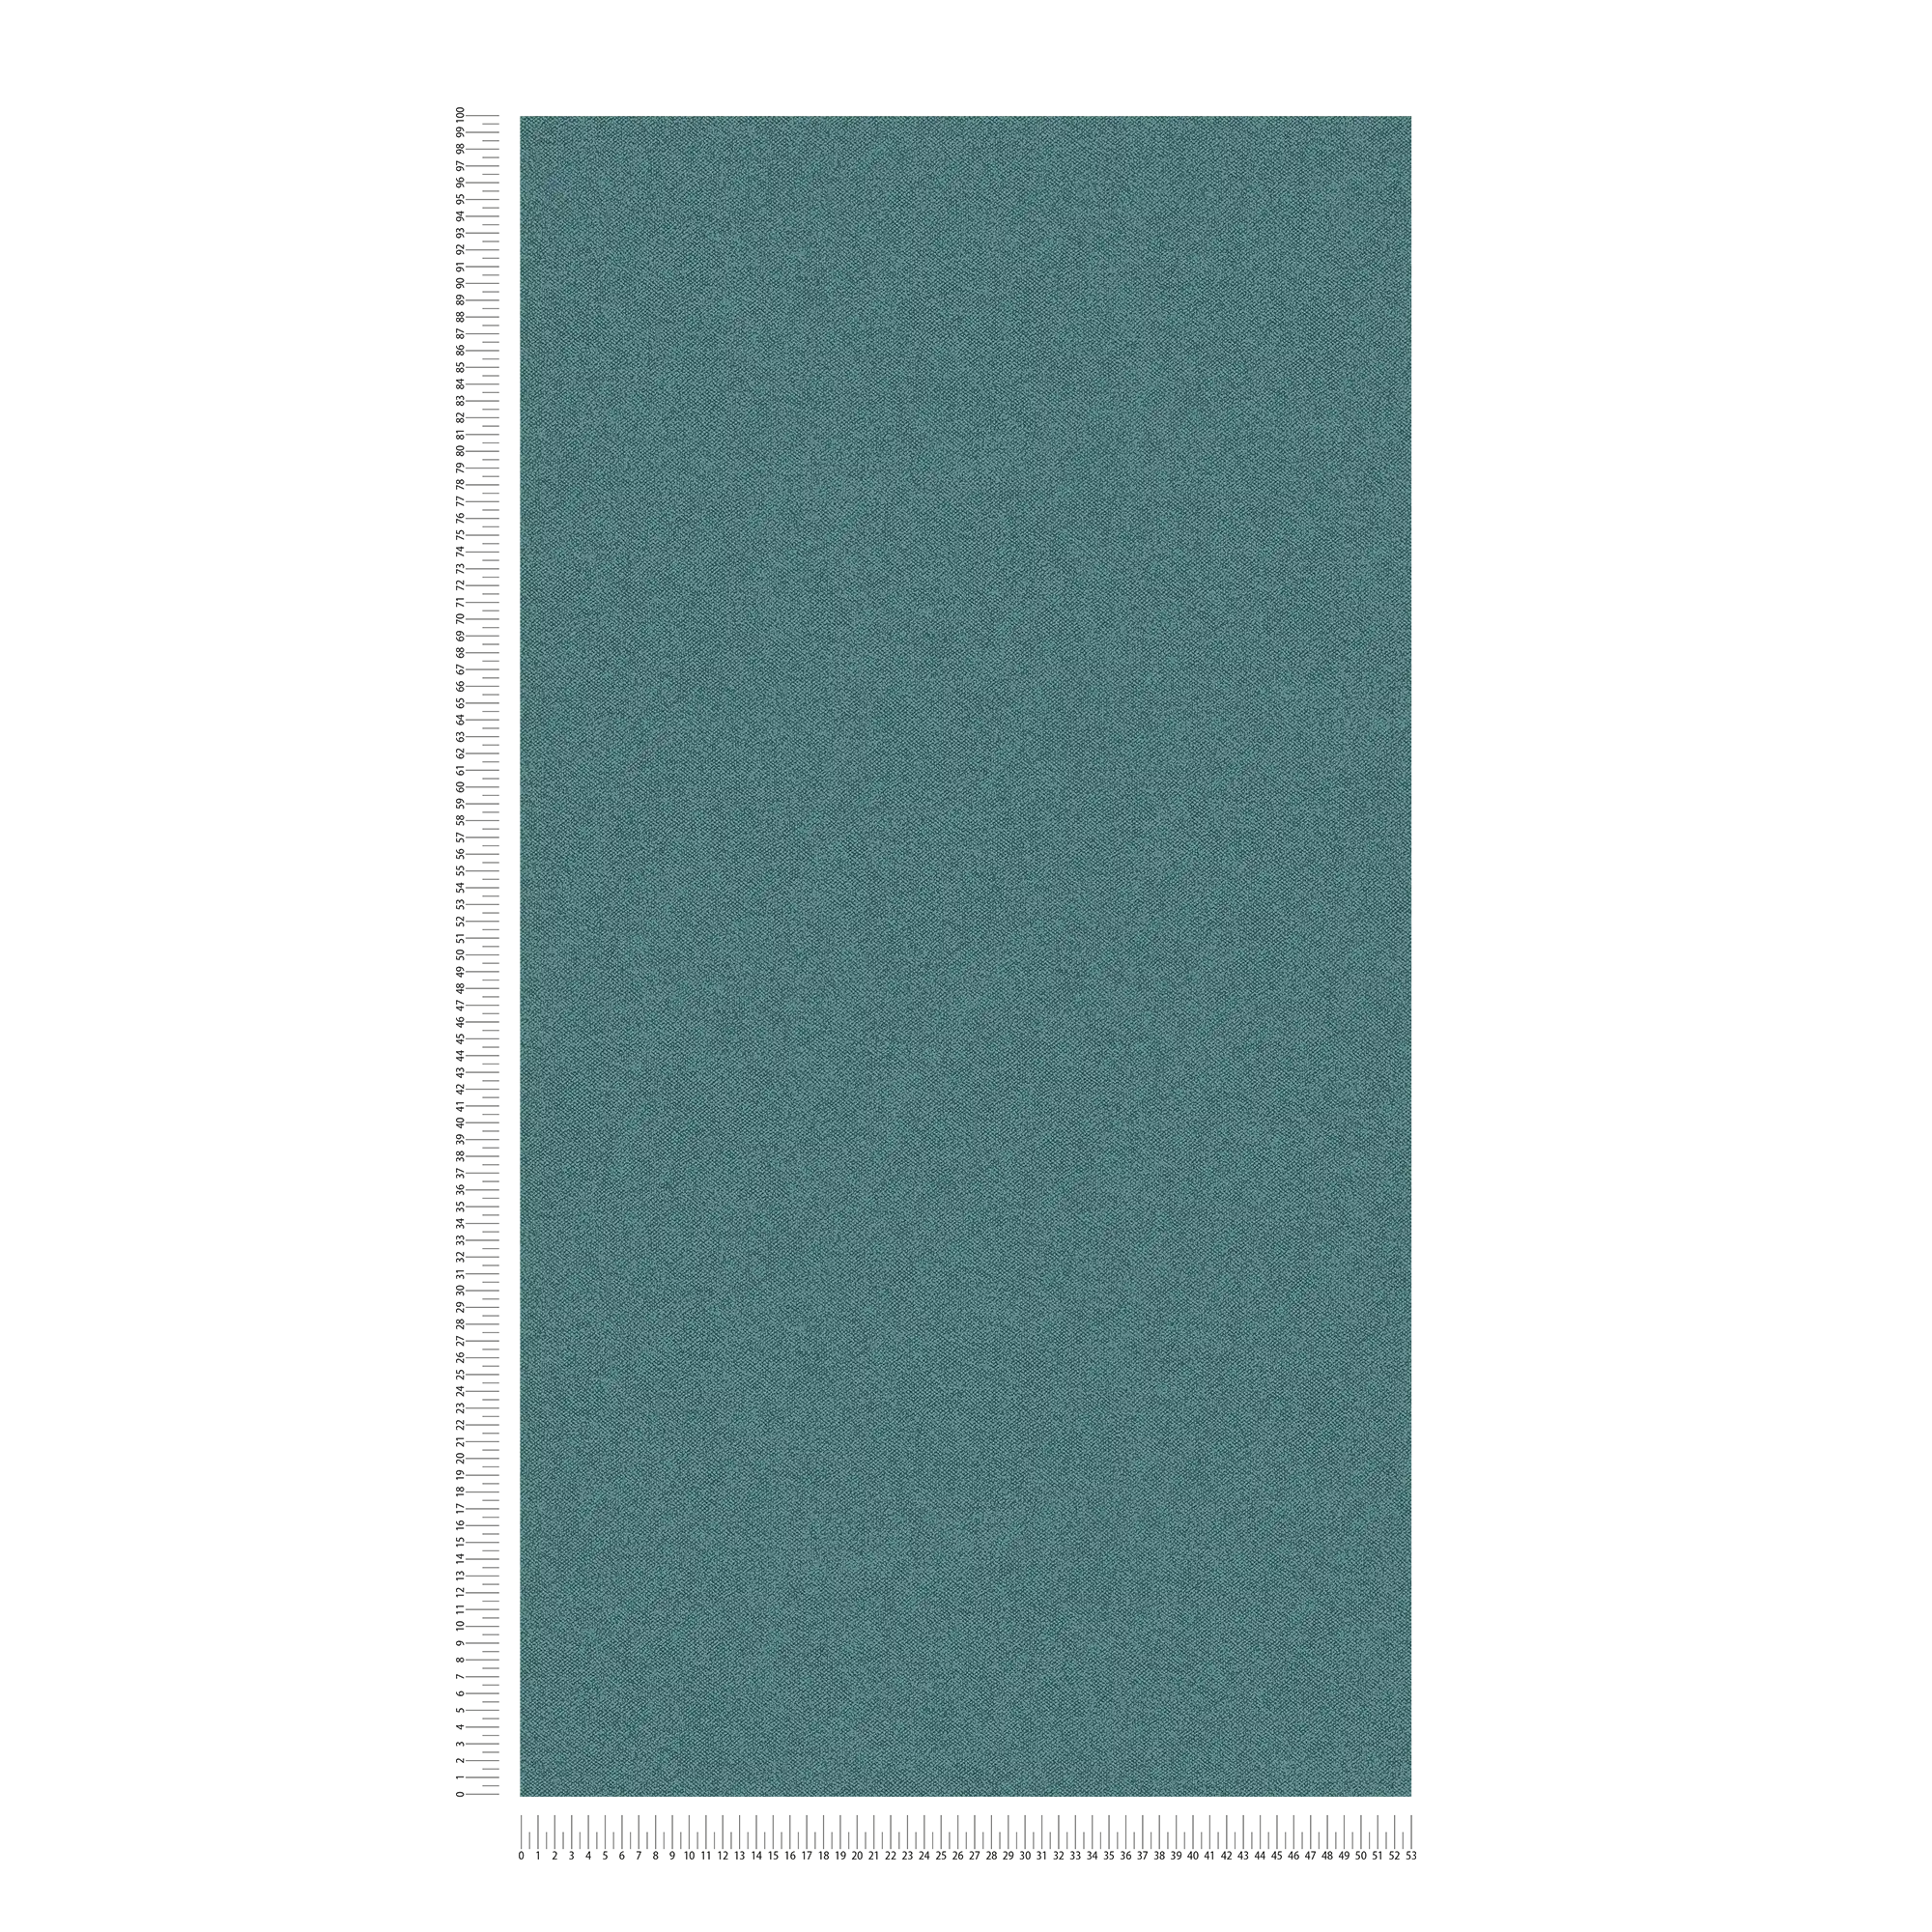             Carta da parati liscia con aspetto di lino, strutturata - verde, blu
        